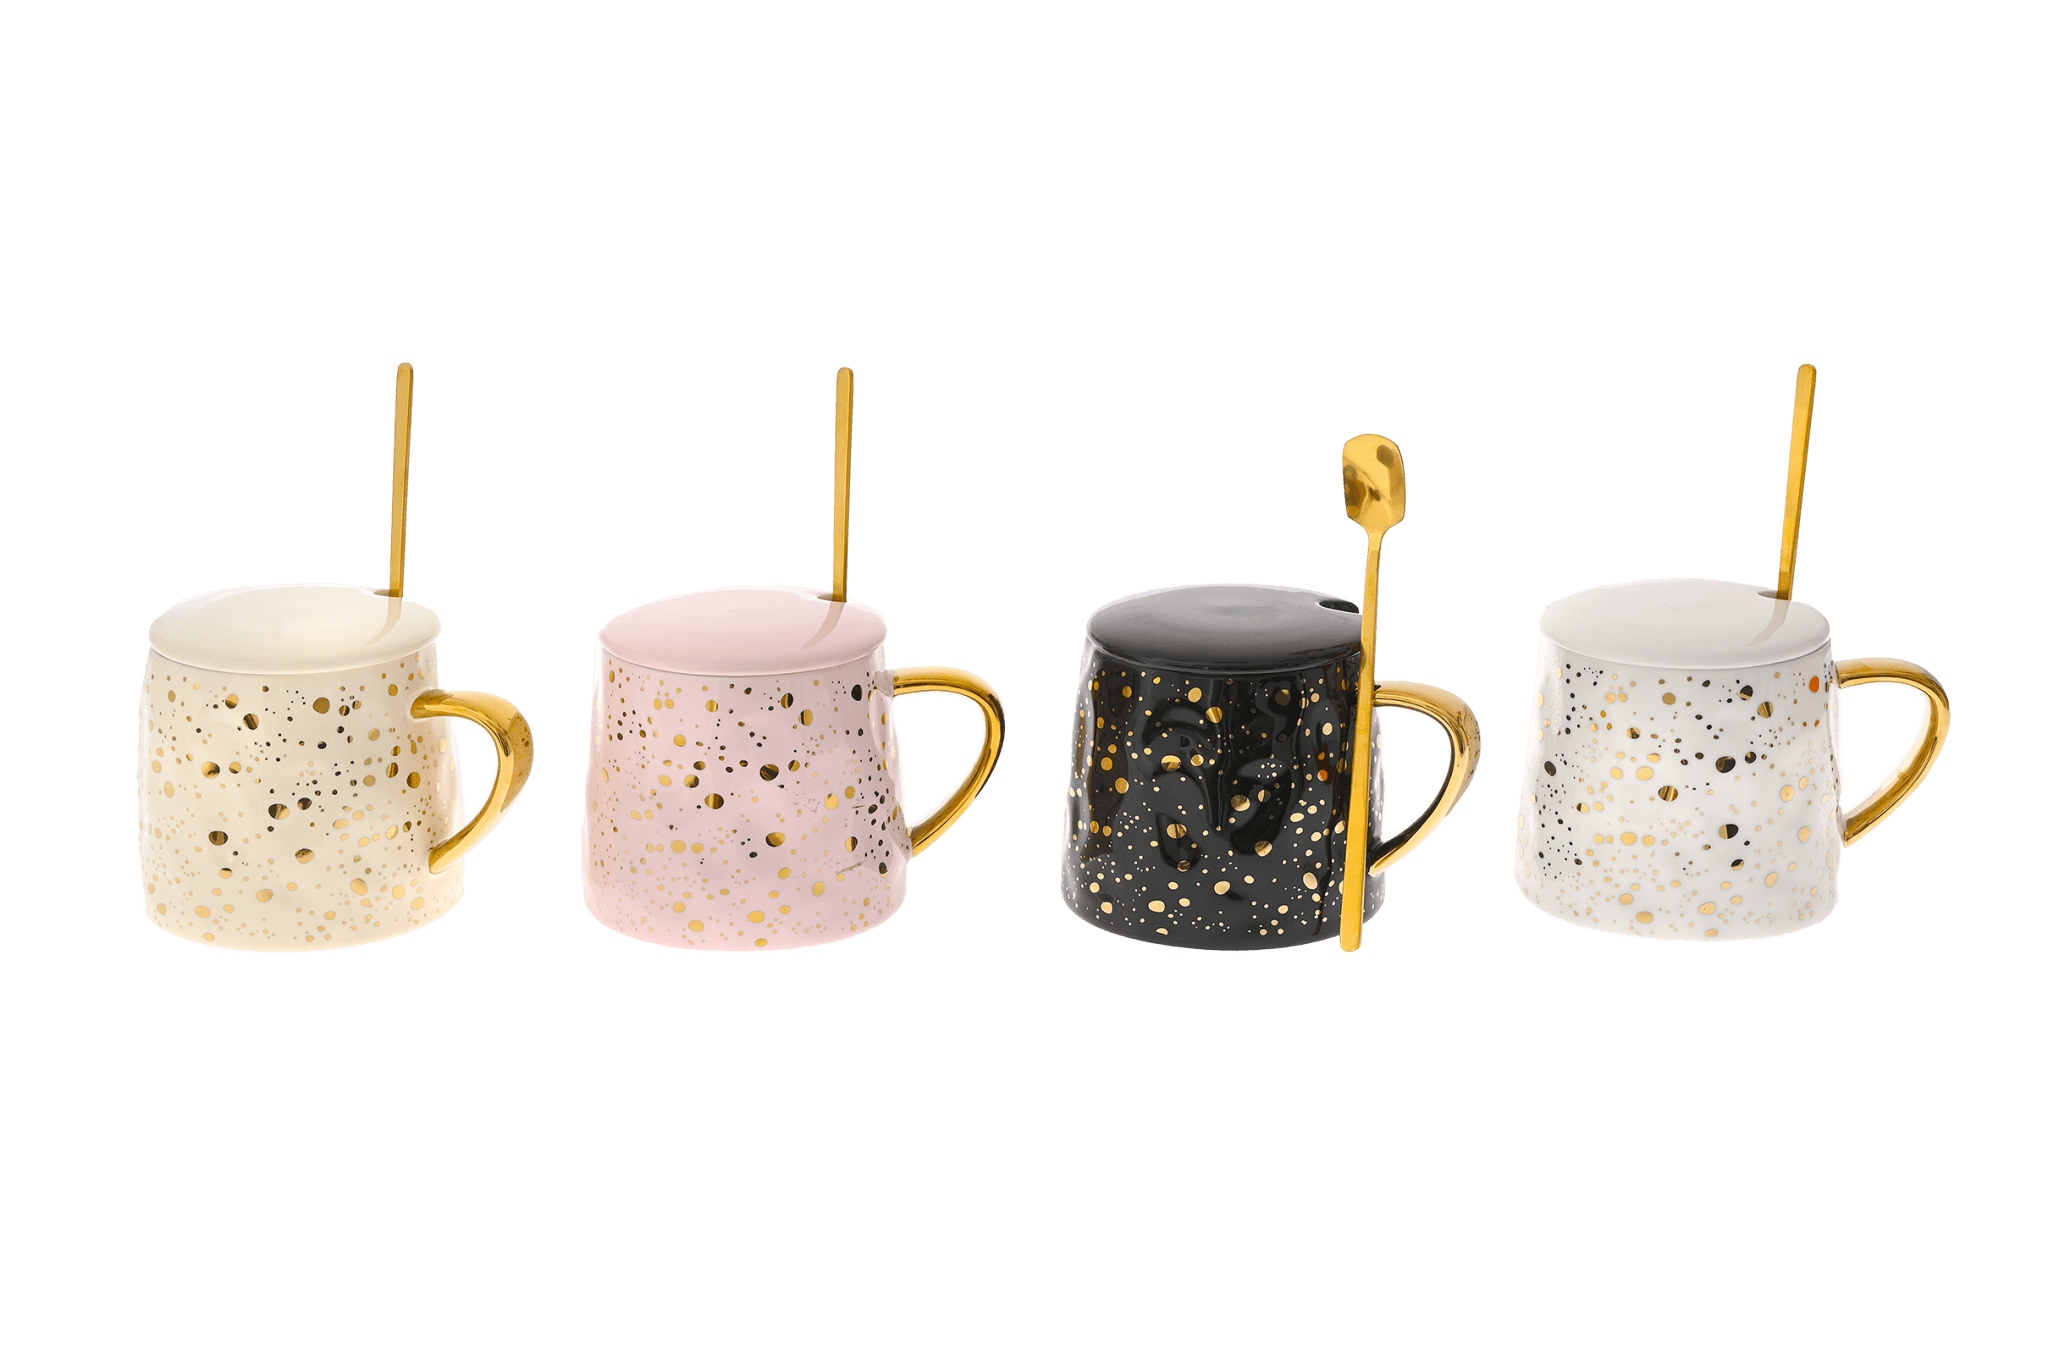 Κεραμική Κούπα με χρυσά σχέδια - Καφεκοπτεία Λουμίδη